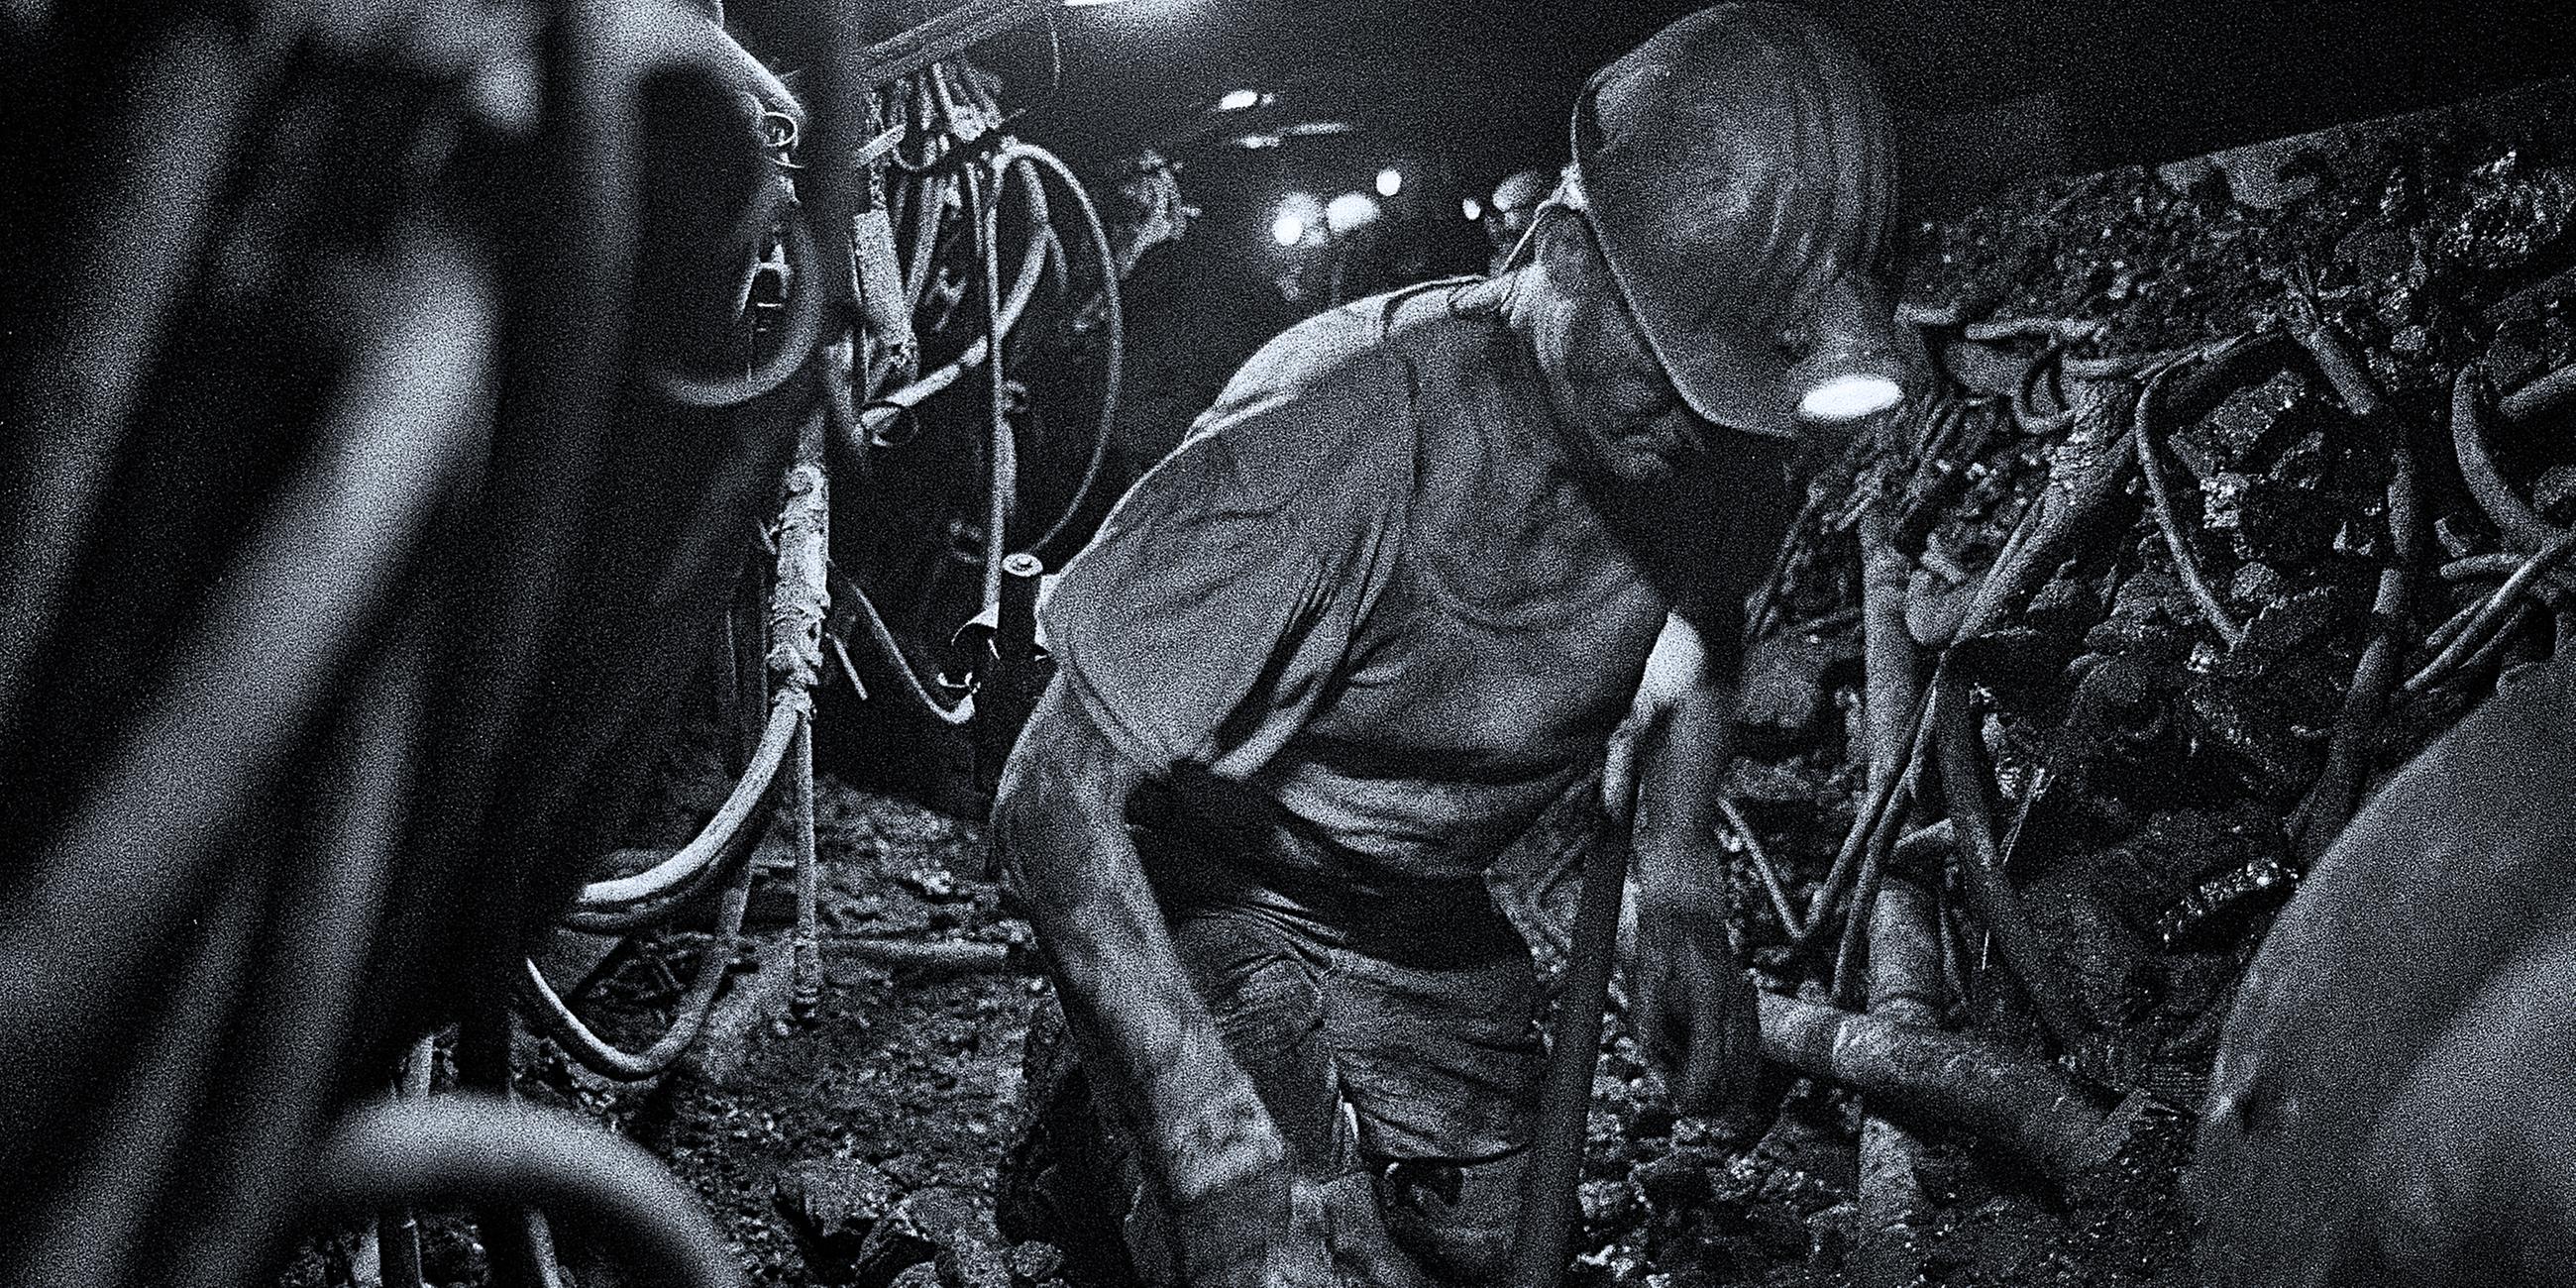 Archiv: Ein Bergmann arbeiten auf der Zeche Prosper Haniel in 1250 Metern Tiefe an einem Flöz unter Tage vor Kohle